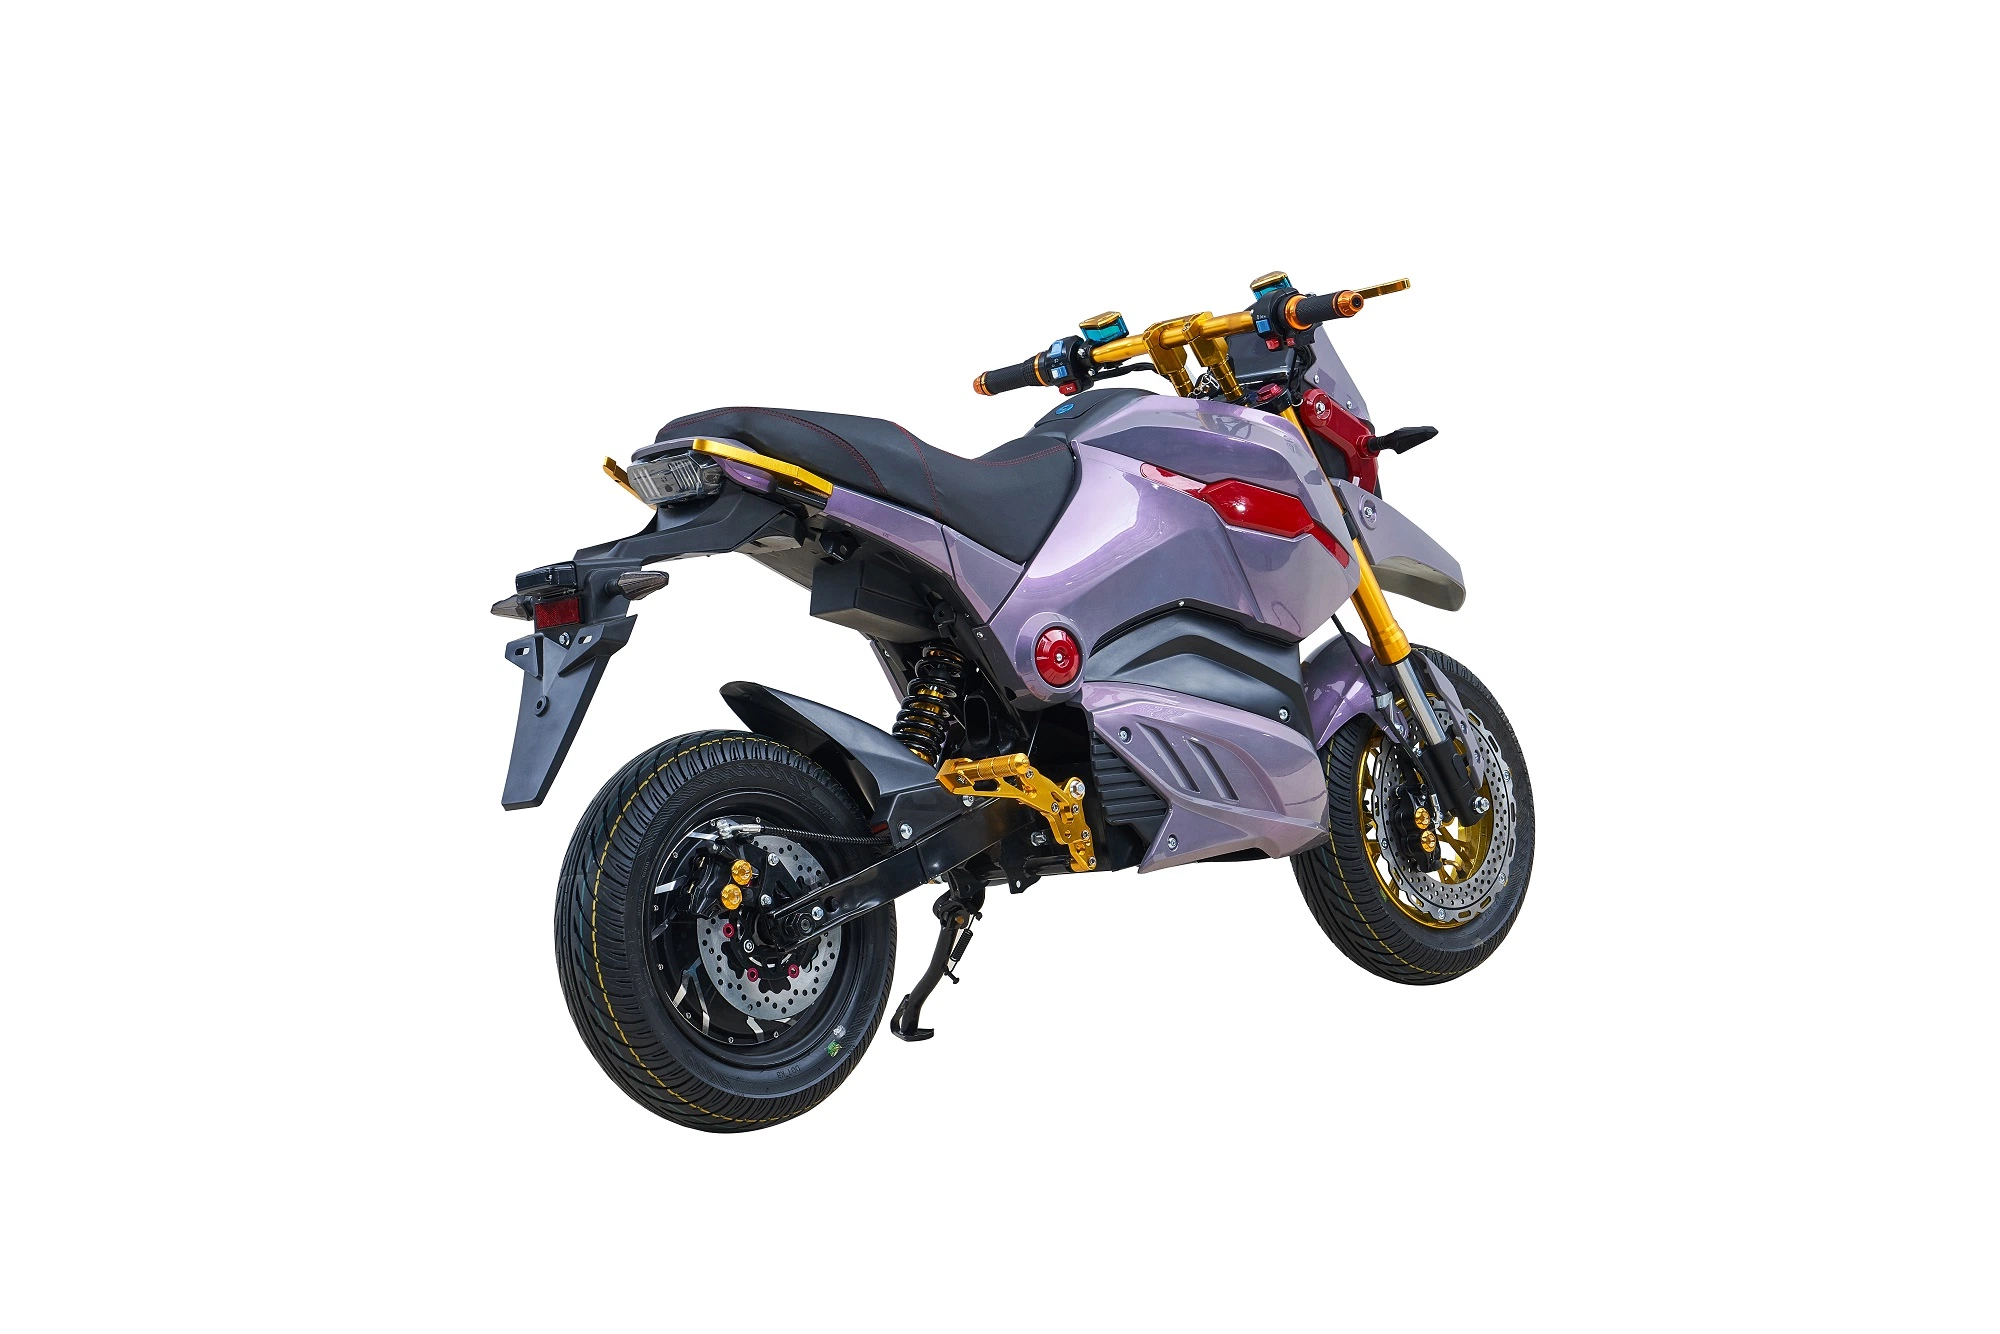 Eléctrico del Motor de 3000W con velocidad máxima de 80-90km/h de la motocicleta taxi Popular Calle China motocicleta Wholeware con 72V32Ah batería